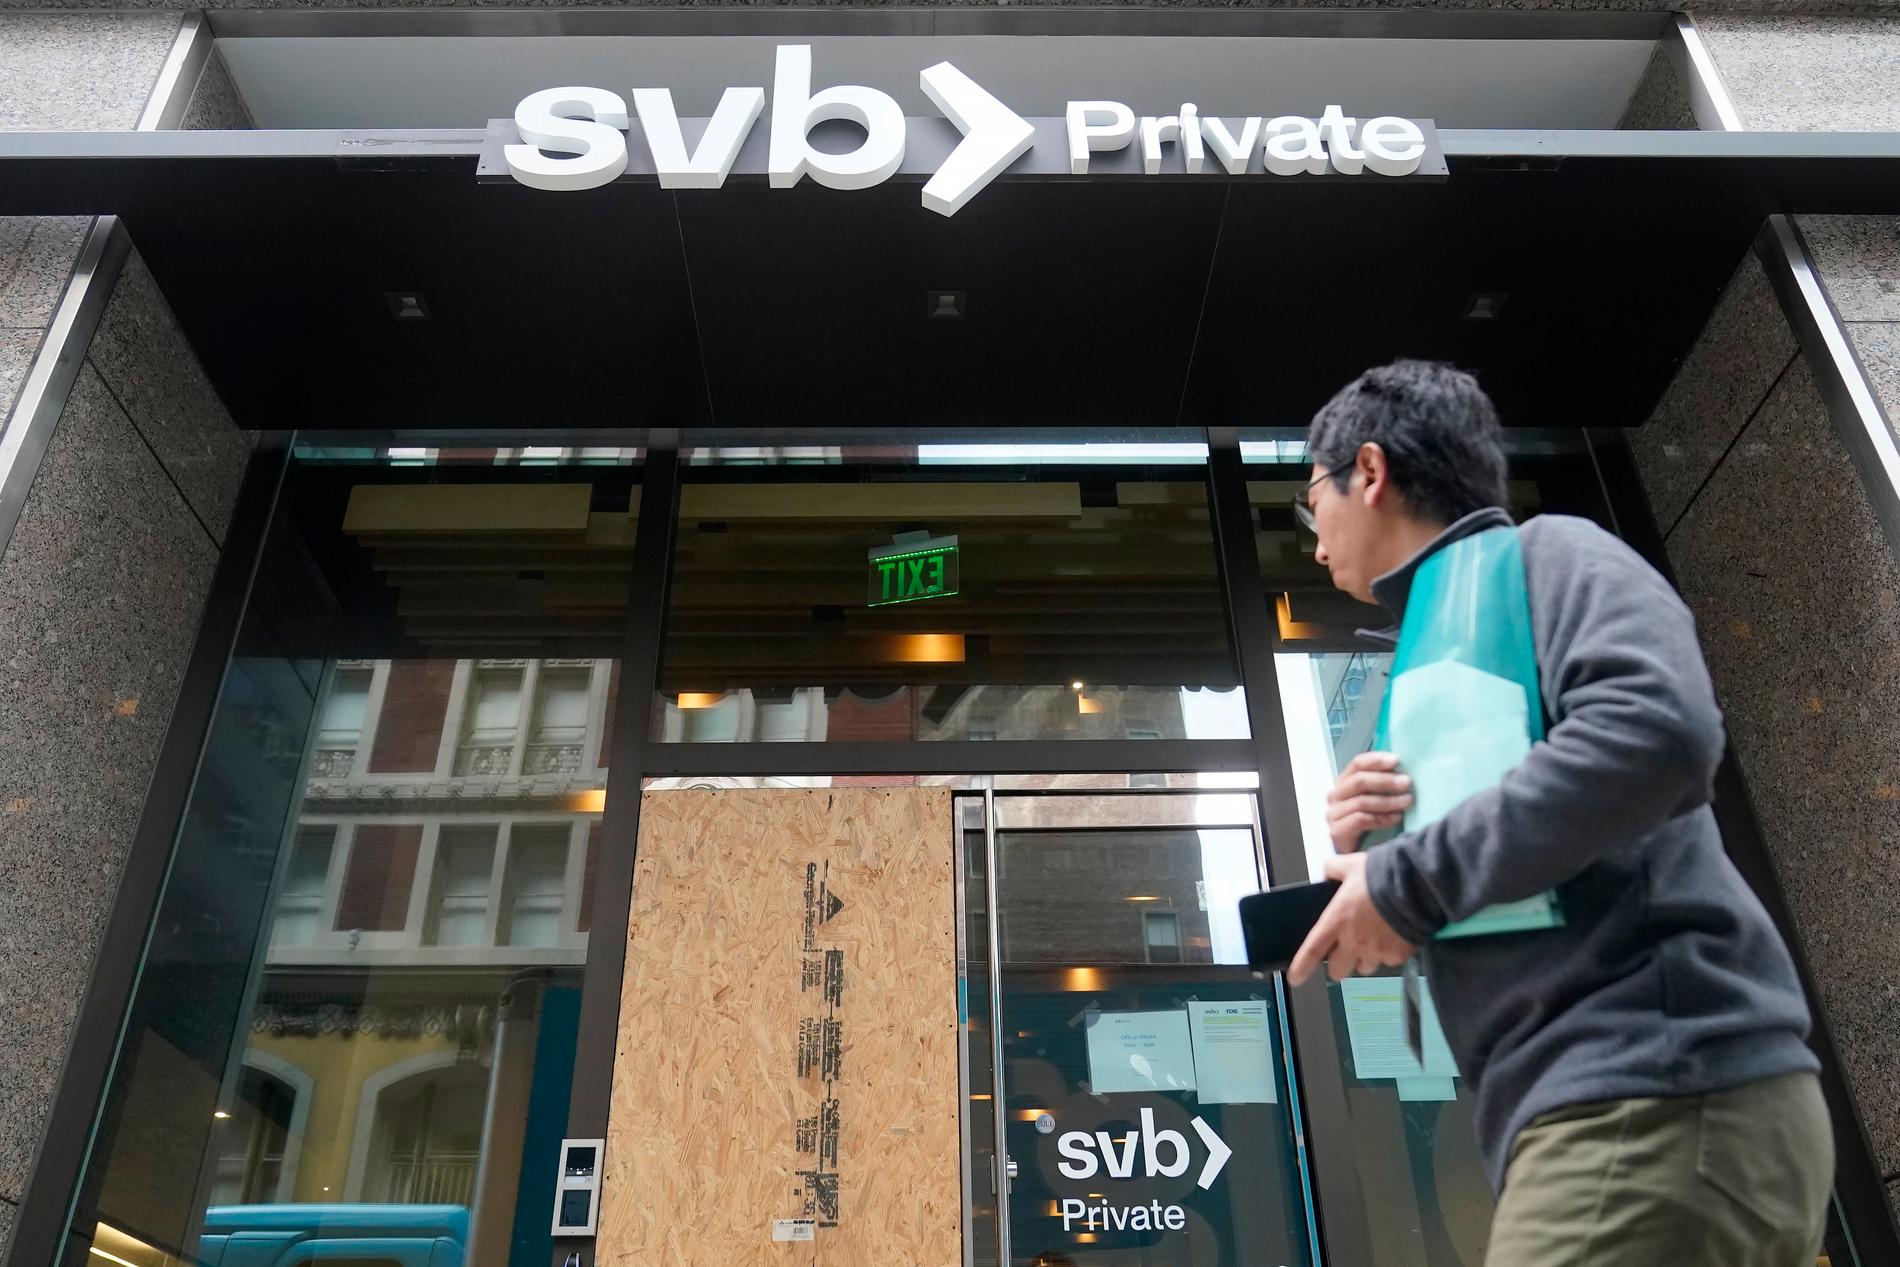 Aktieägarna i SVB blev av med sina insatser när amerikanska bankmyndigheten FDIC tog över krisbanken.